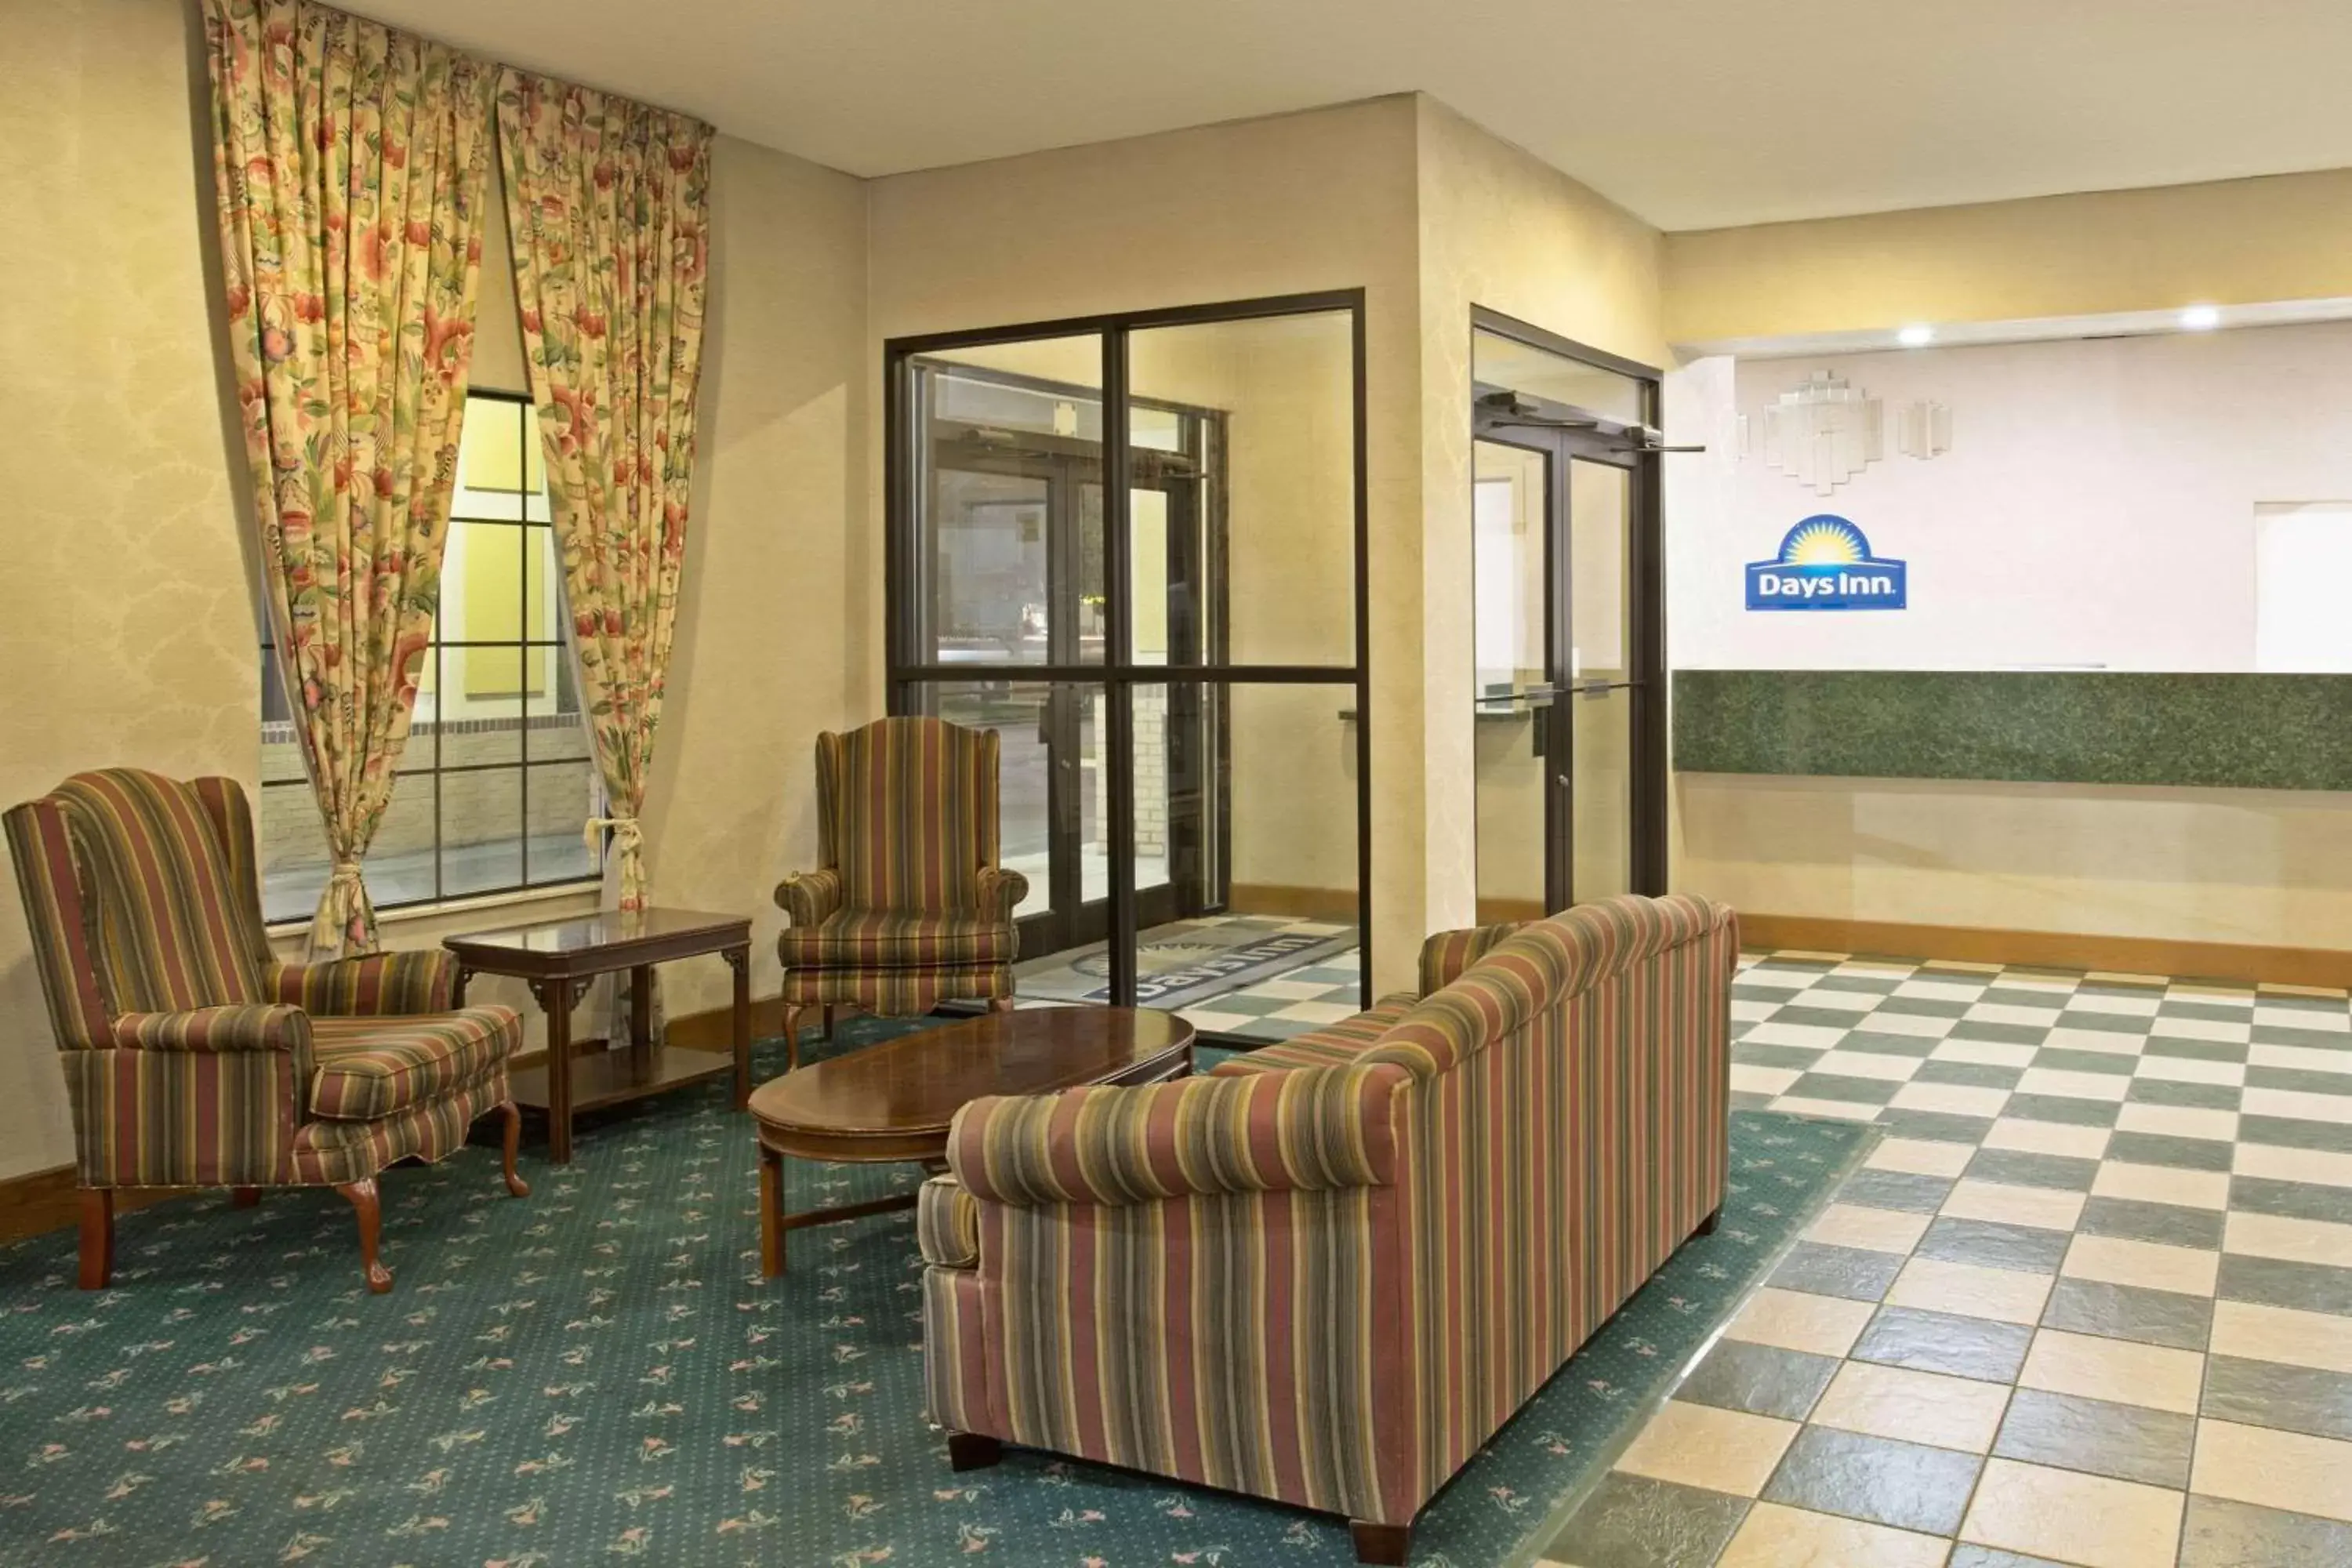 Lobby or reception, Lobby/Reception in Days Inn by Wyndham Hammond